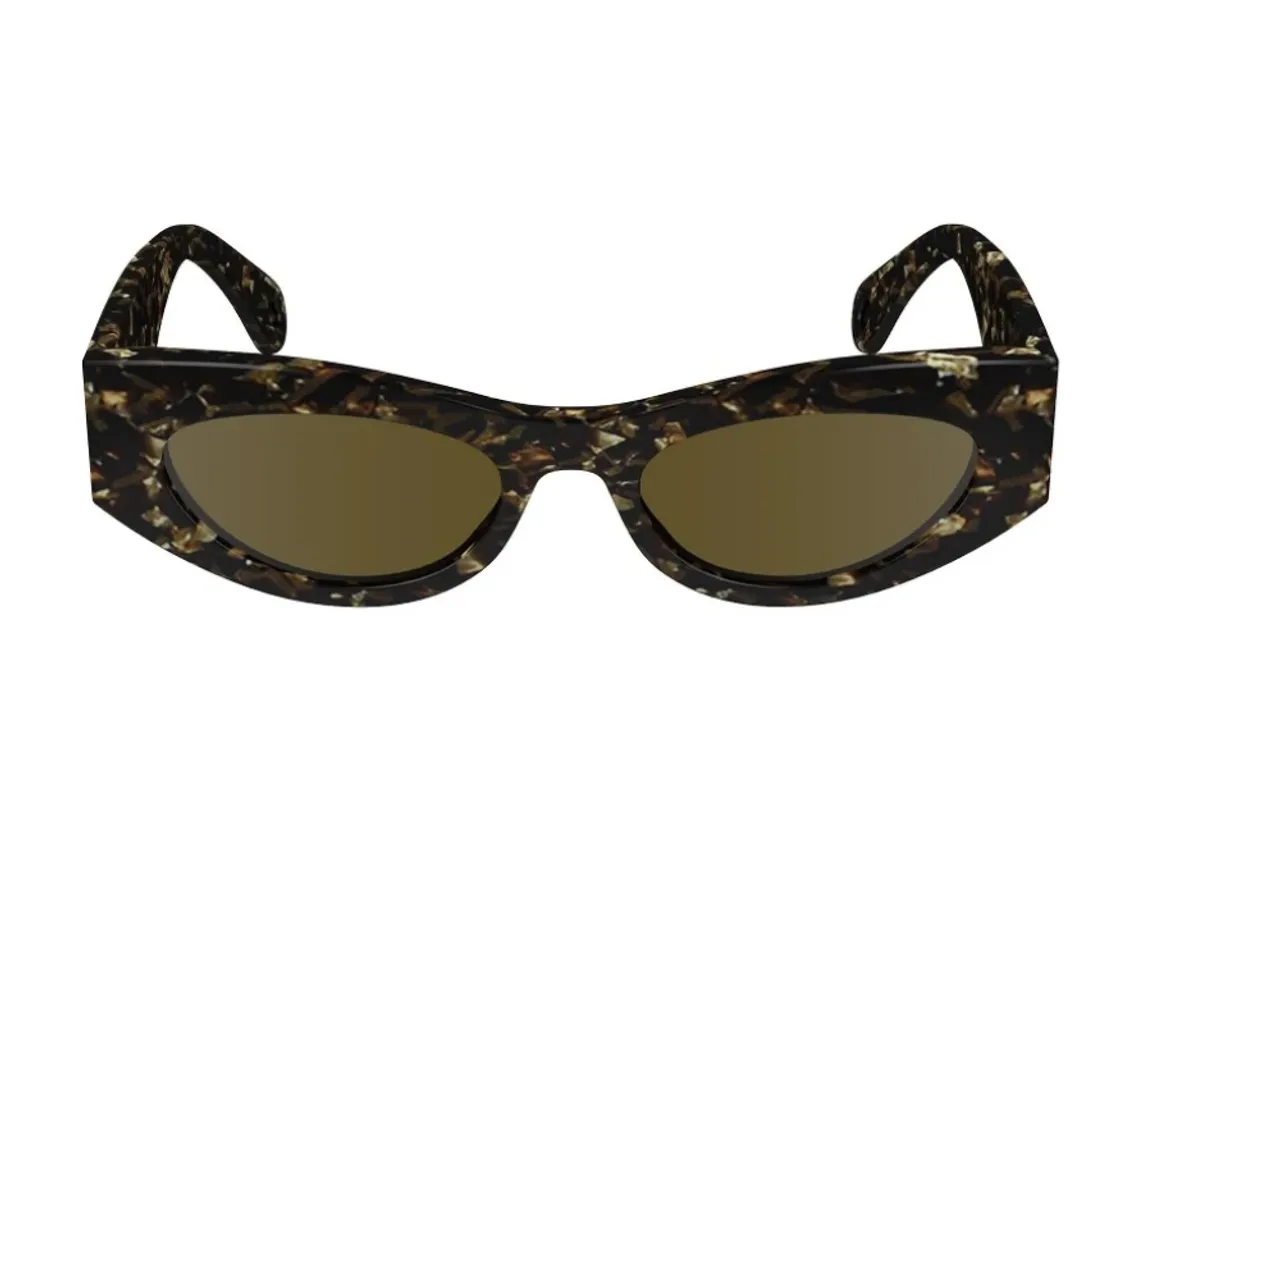 Stylische Sonnenbrille,LNV669S Sonnenbrille,Stylische Sonnenbrille mit 330 Design,Stylische Sonnenbrille Lnv669S Lanvin